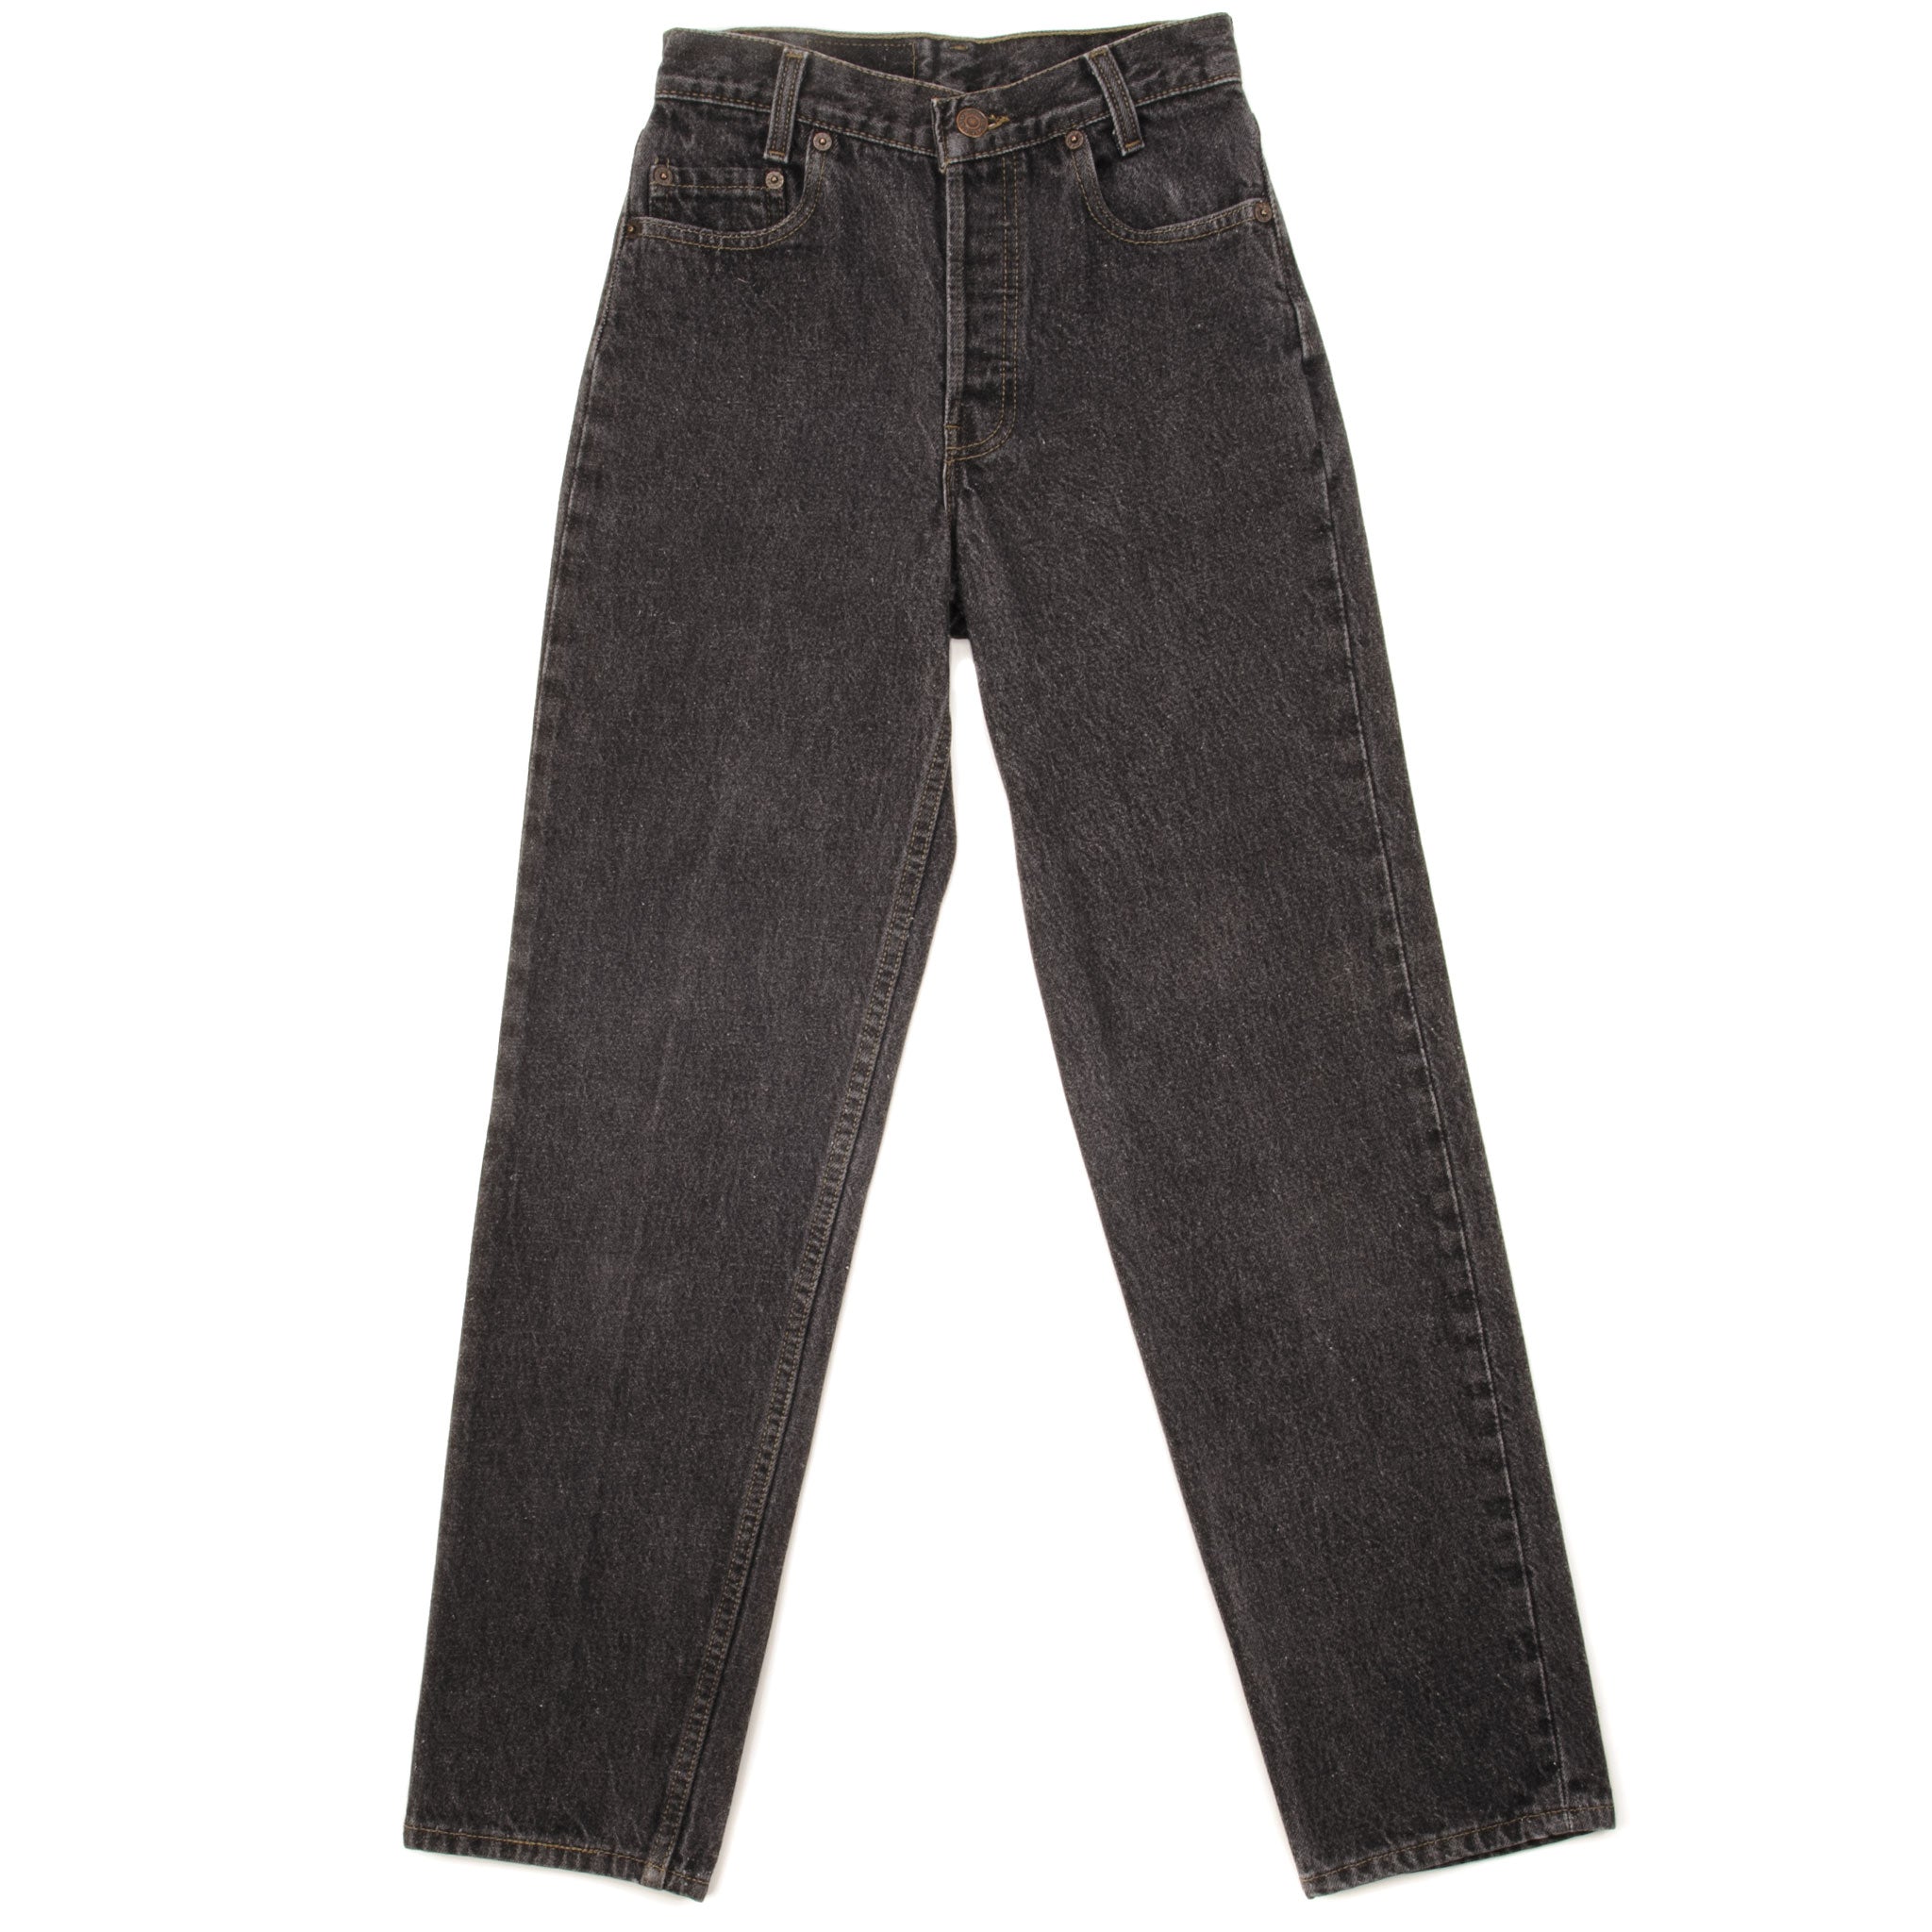 6,860円Levi's Denim pants vintage 90s MADEINUSA